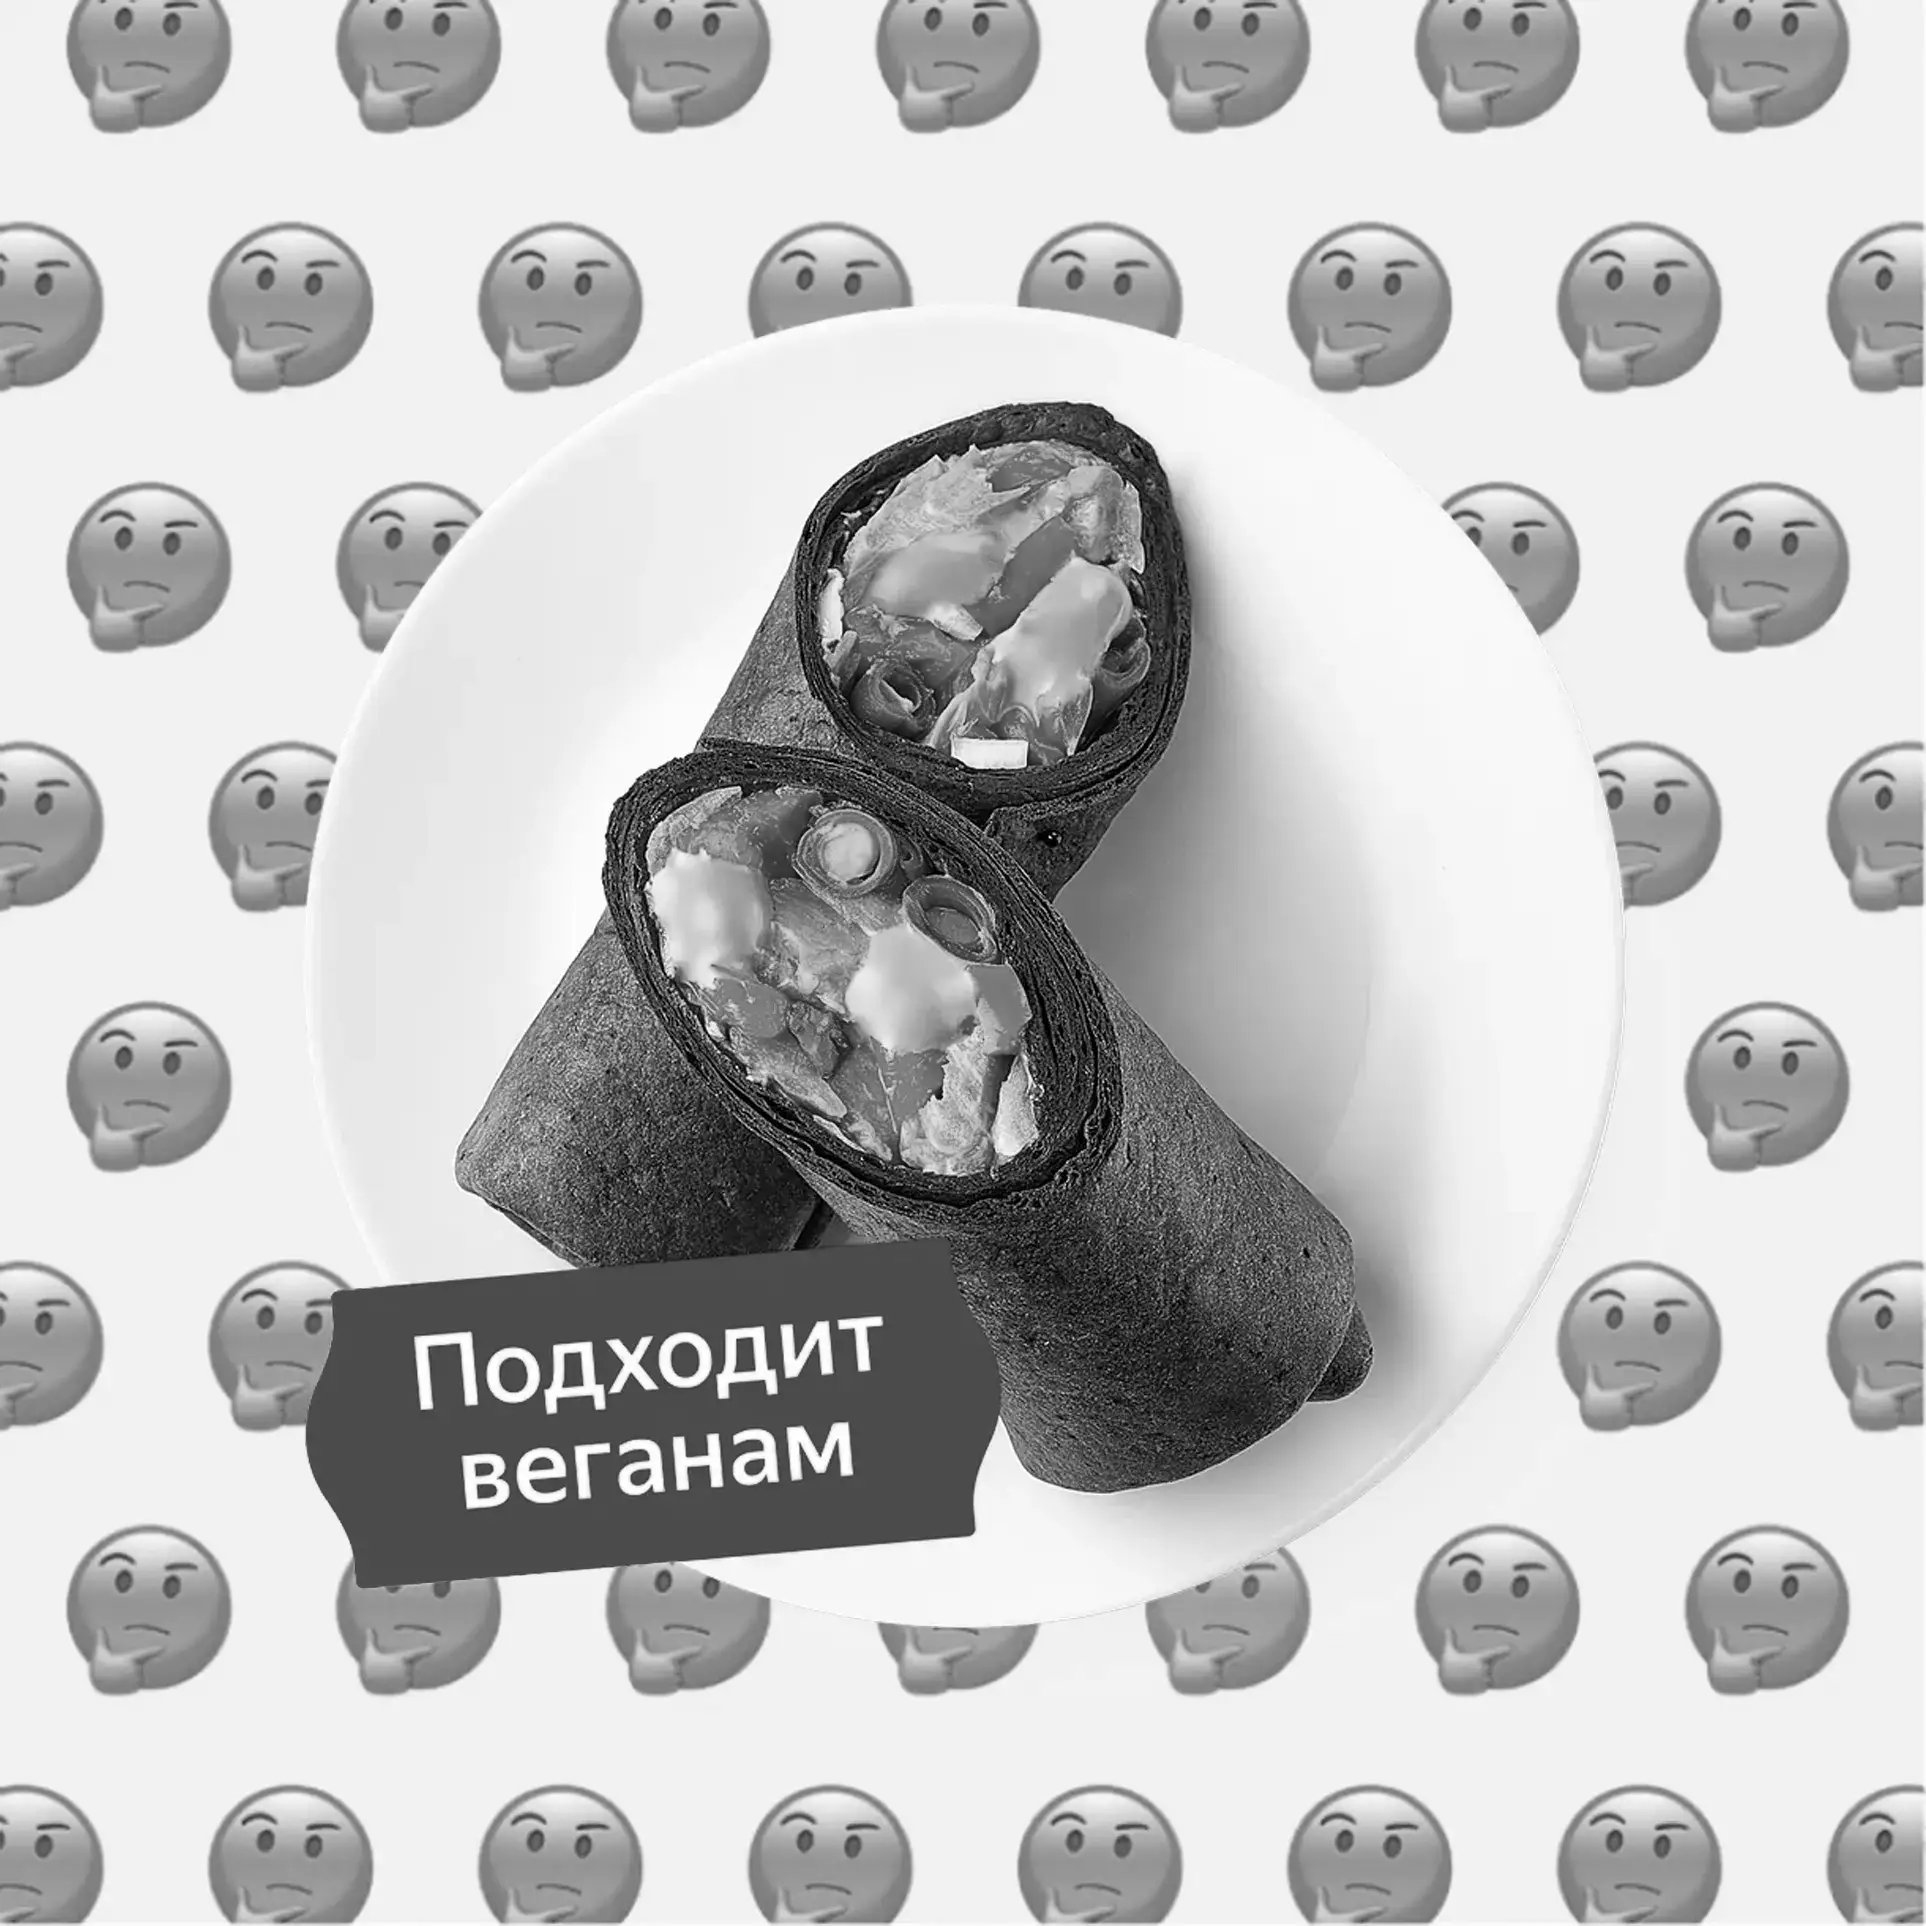 Архив: По вегану ли black-ролл Терияки с растительным филе Вместо курицы из Яндекс Лавки?